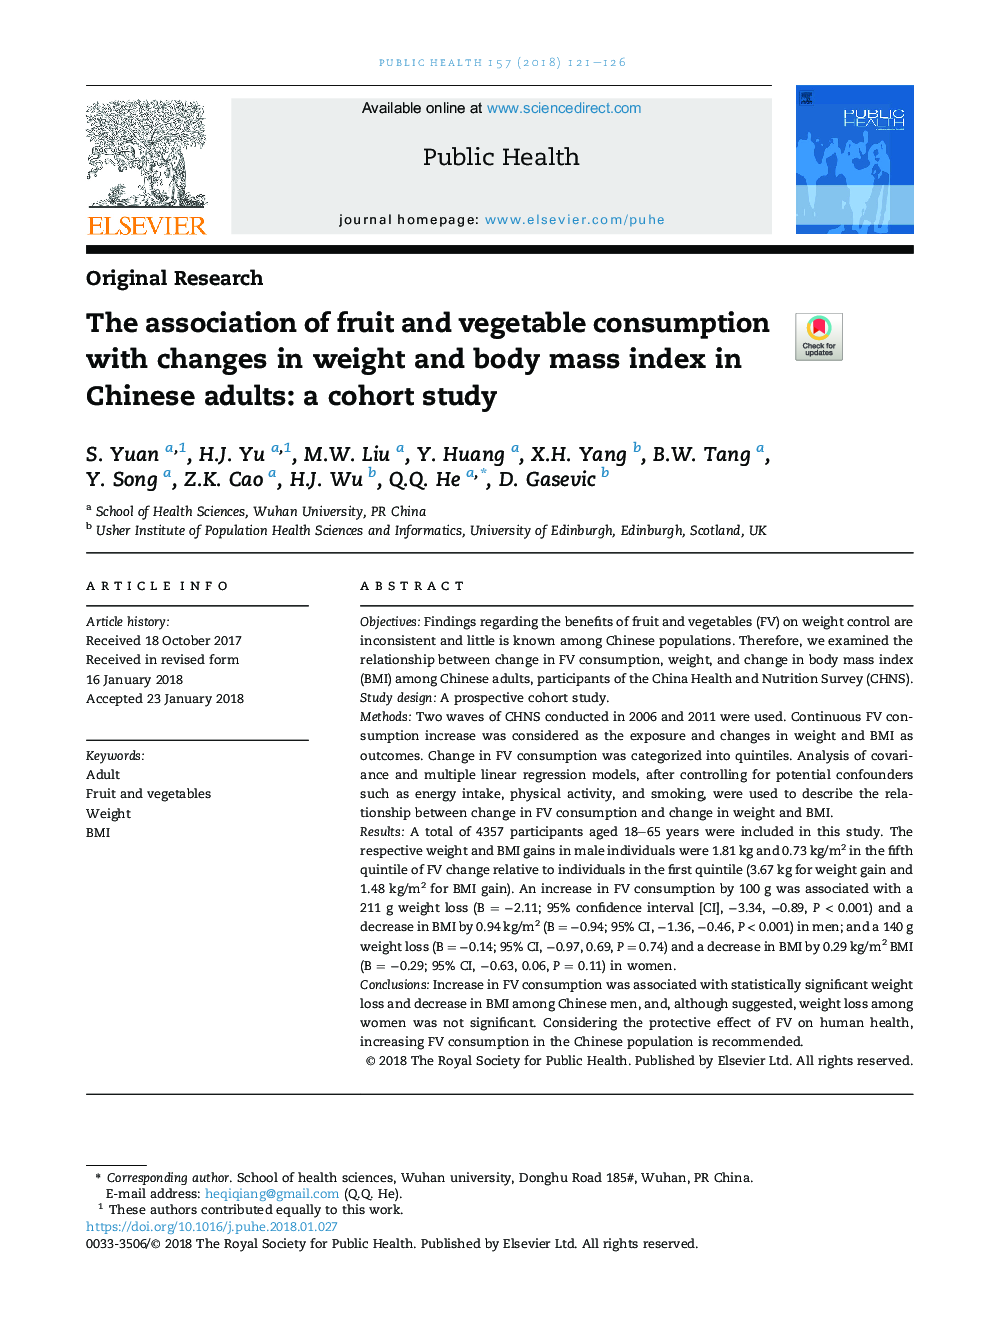 ارتباط مصرف میوه و سبزی با تغییرات وزن و شاخص توده بدن در بزرگسالان چینی: یک مطالعه همگروه 